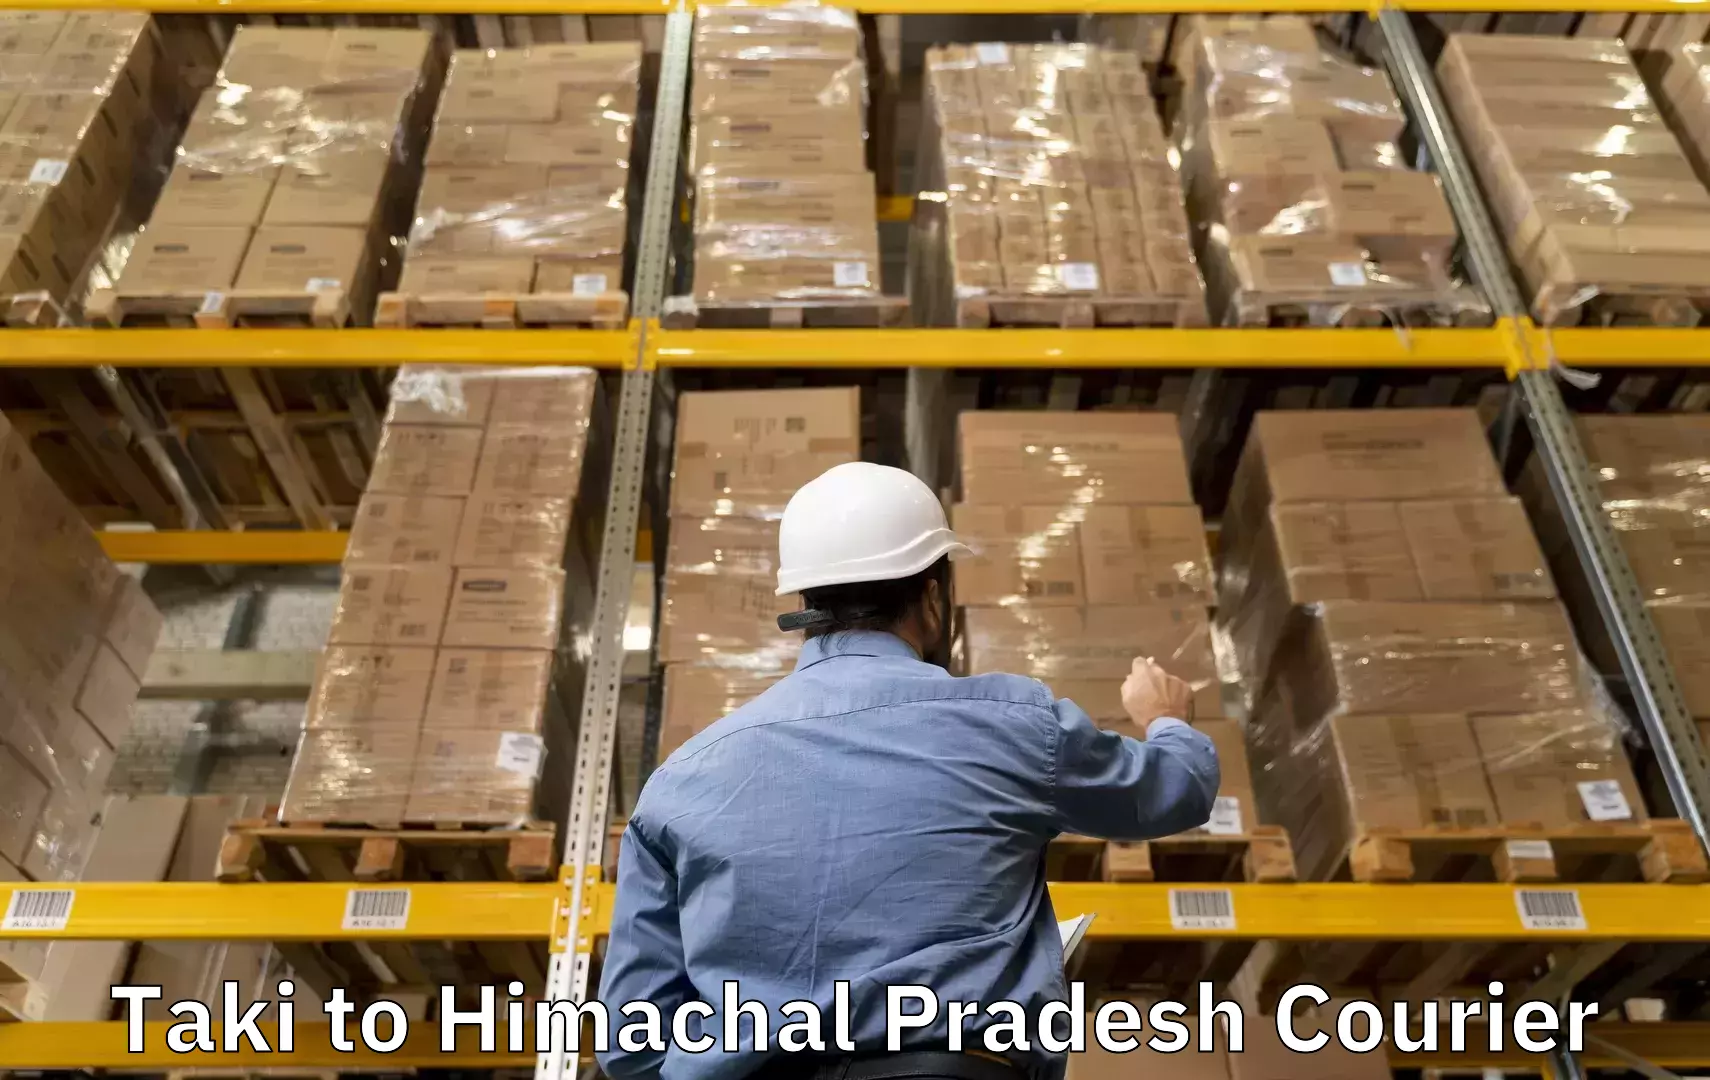 Luggage shipment specialists Taki to Himachal Pradesh